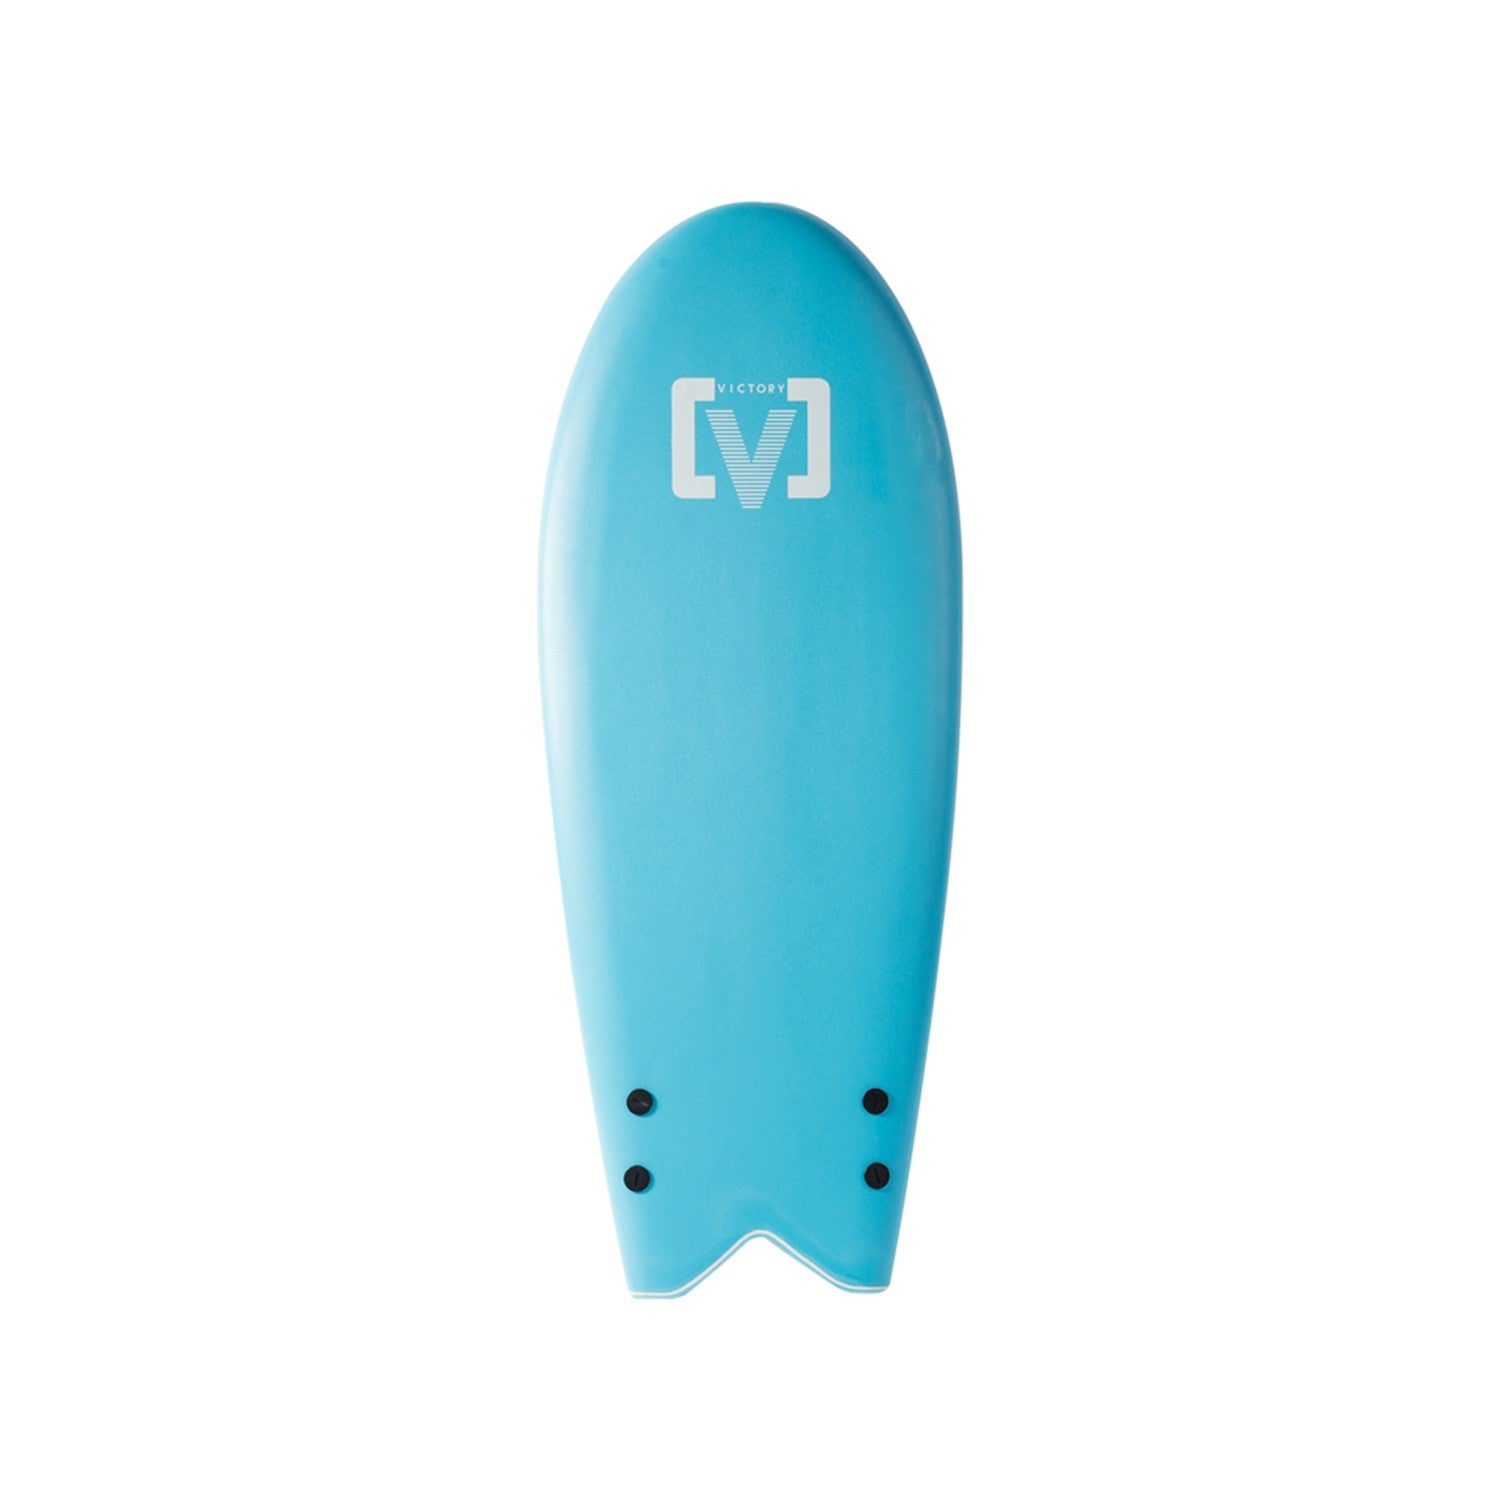 VICTORY - EPS Softboard - Tabla de surf de espuma - Torpedo 4'7 - Azul cielo 